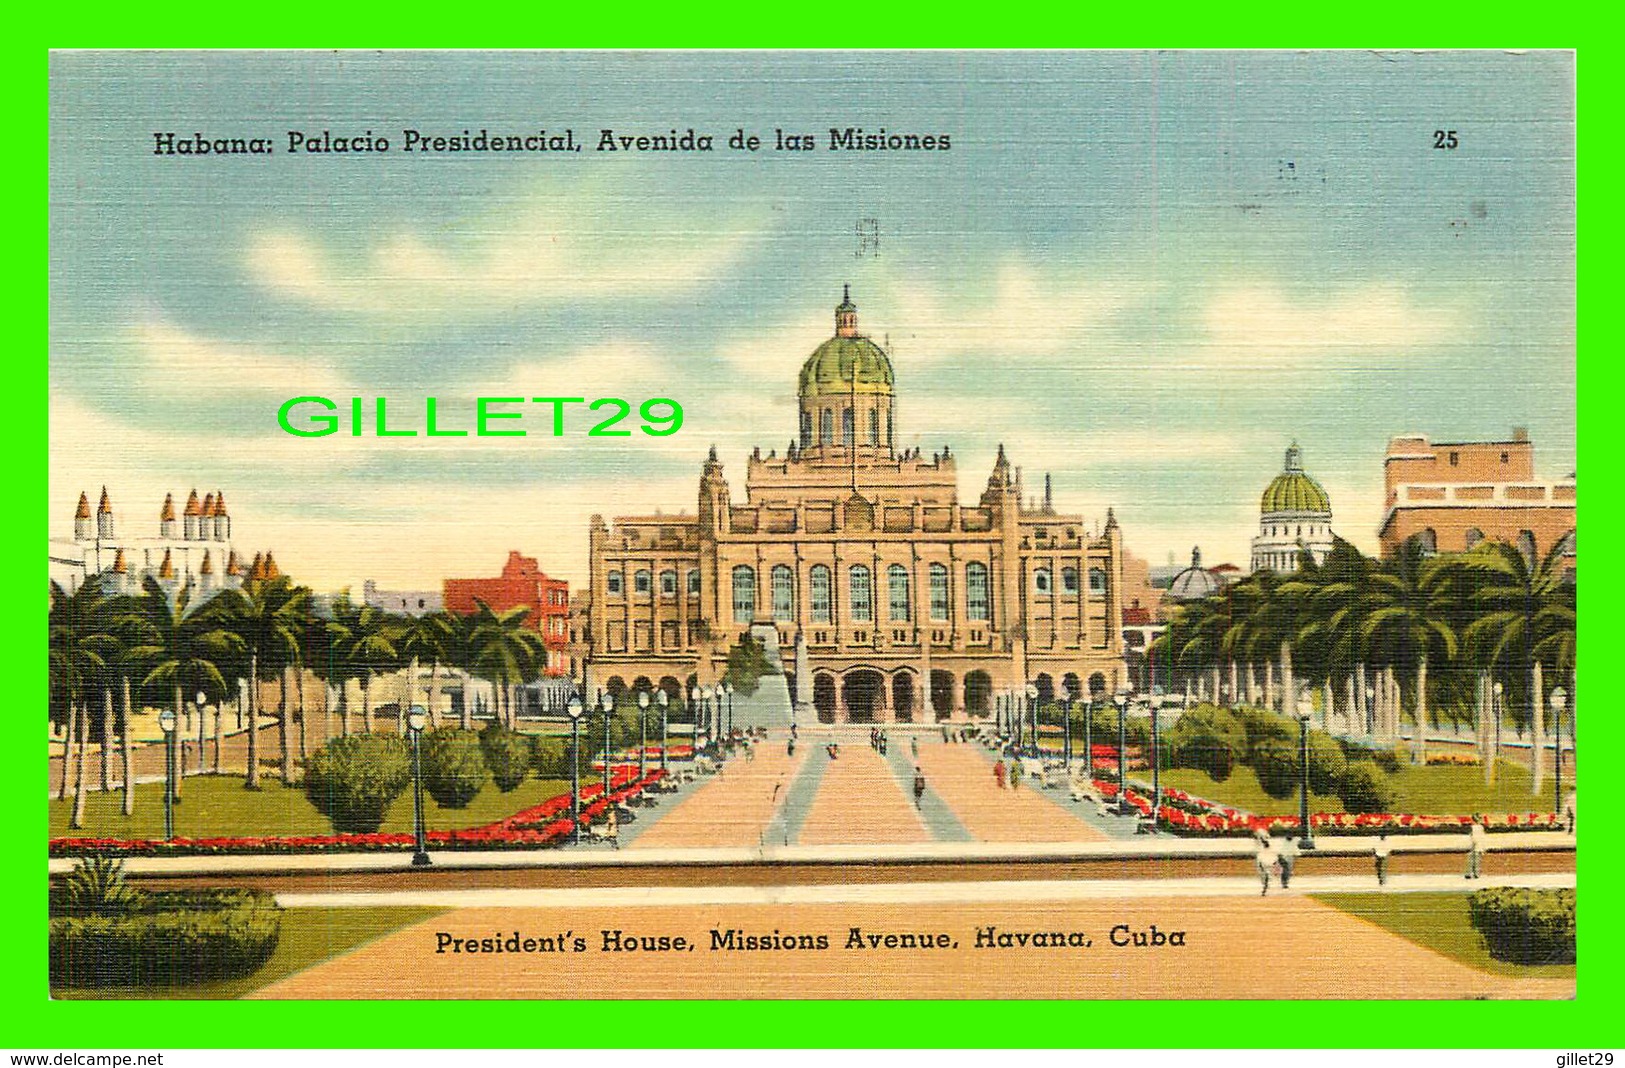 HAVANA, CUBA - HABANA, PALACIO PRESIDENCIAL, AVENIDA DE LAS MISIONES - TRAVEL IN 1948 - - Kuba